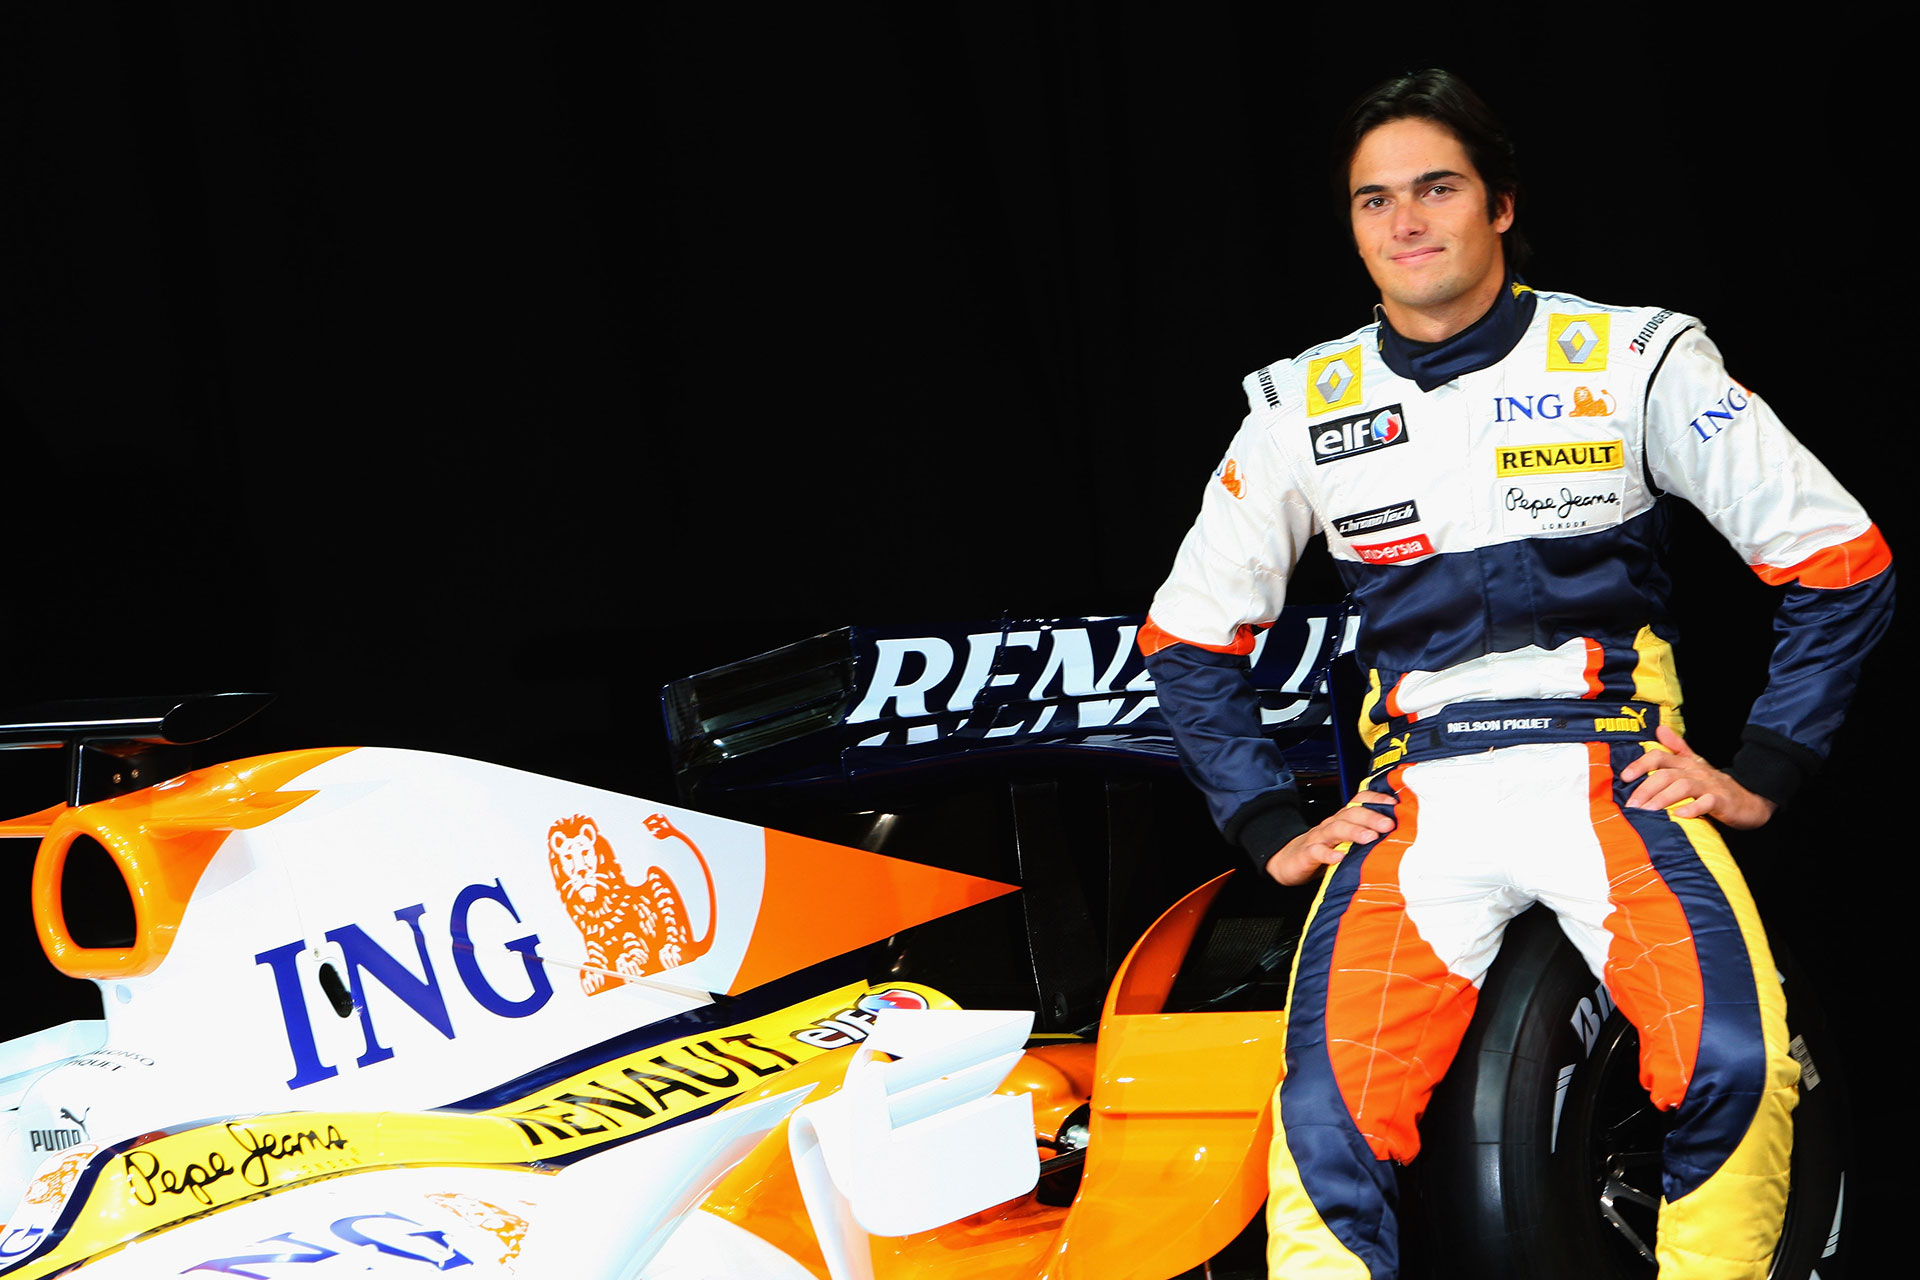 Luego del Crasgate, Nelsinho Piquet tuvo los días contados en la Fórmula 1